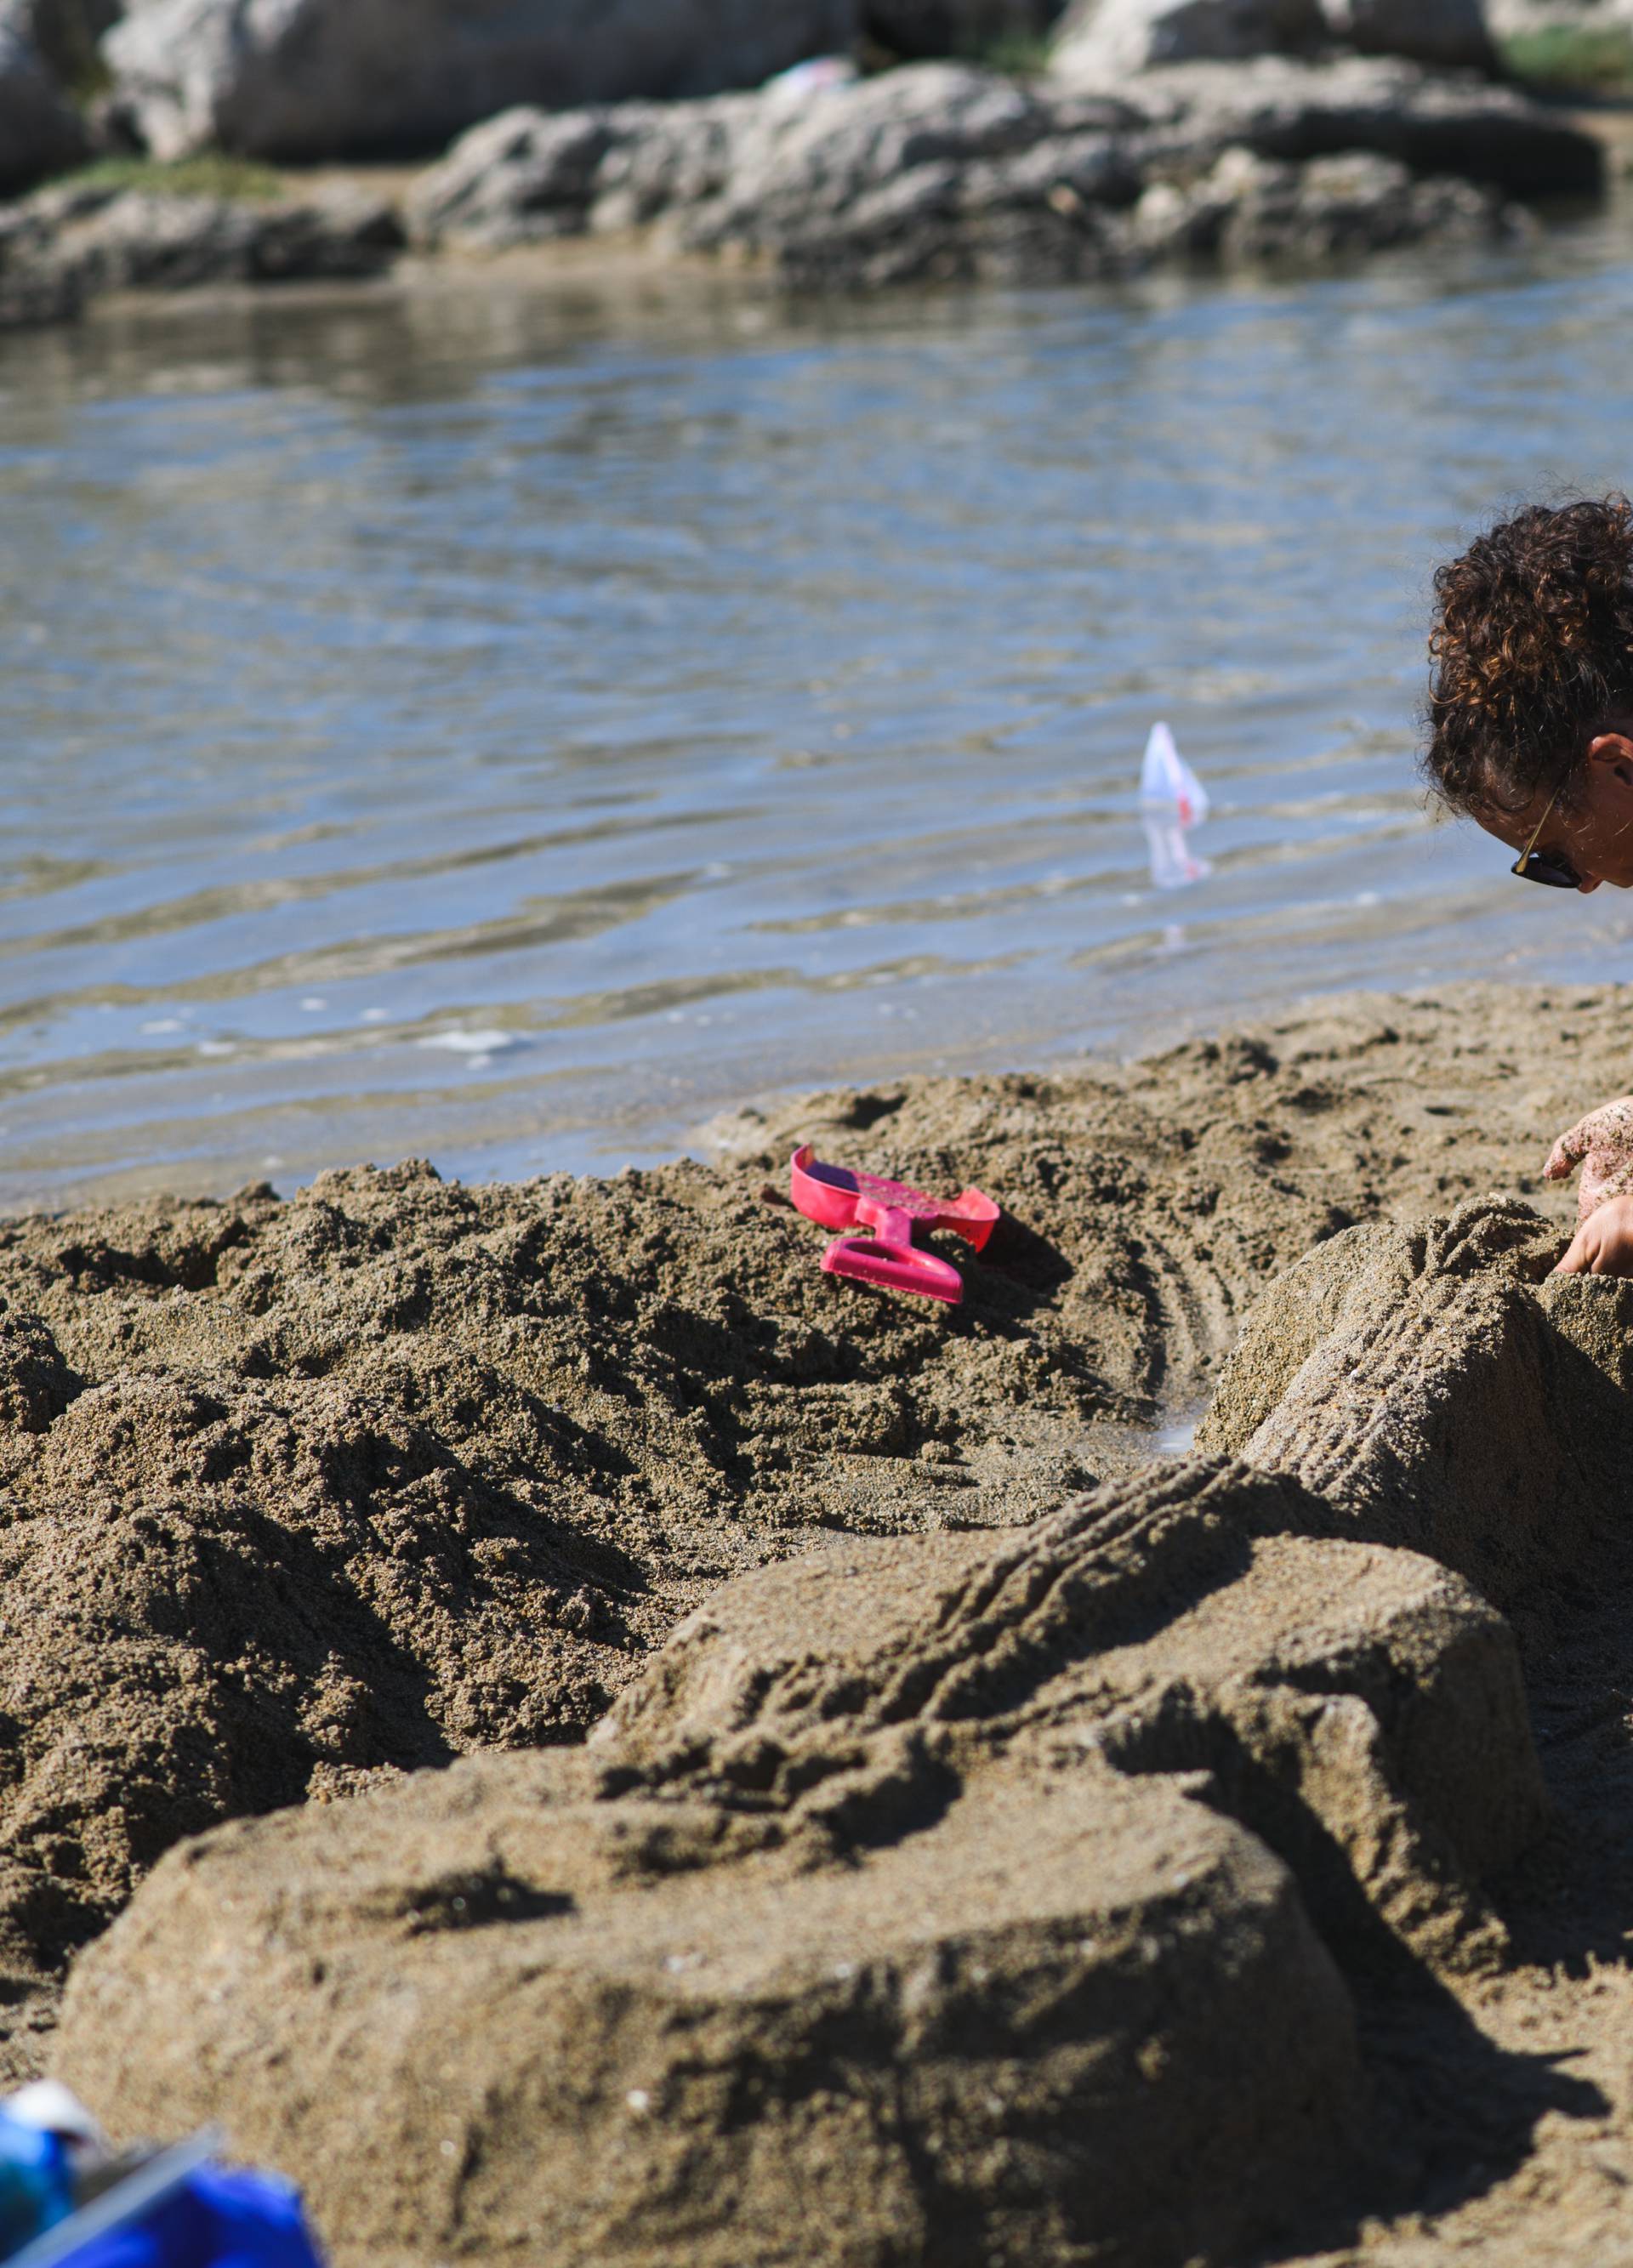 Prekrasne skulpture od pijeska uljepšale poznate plaže u Ninu